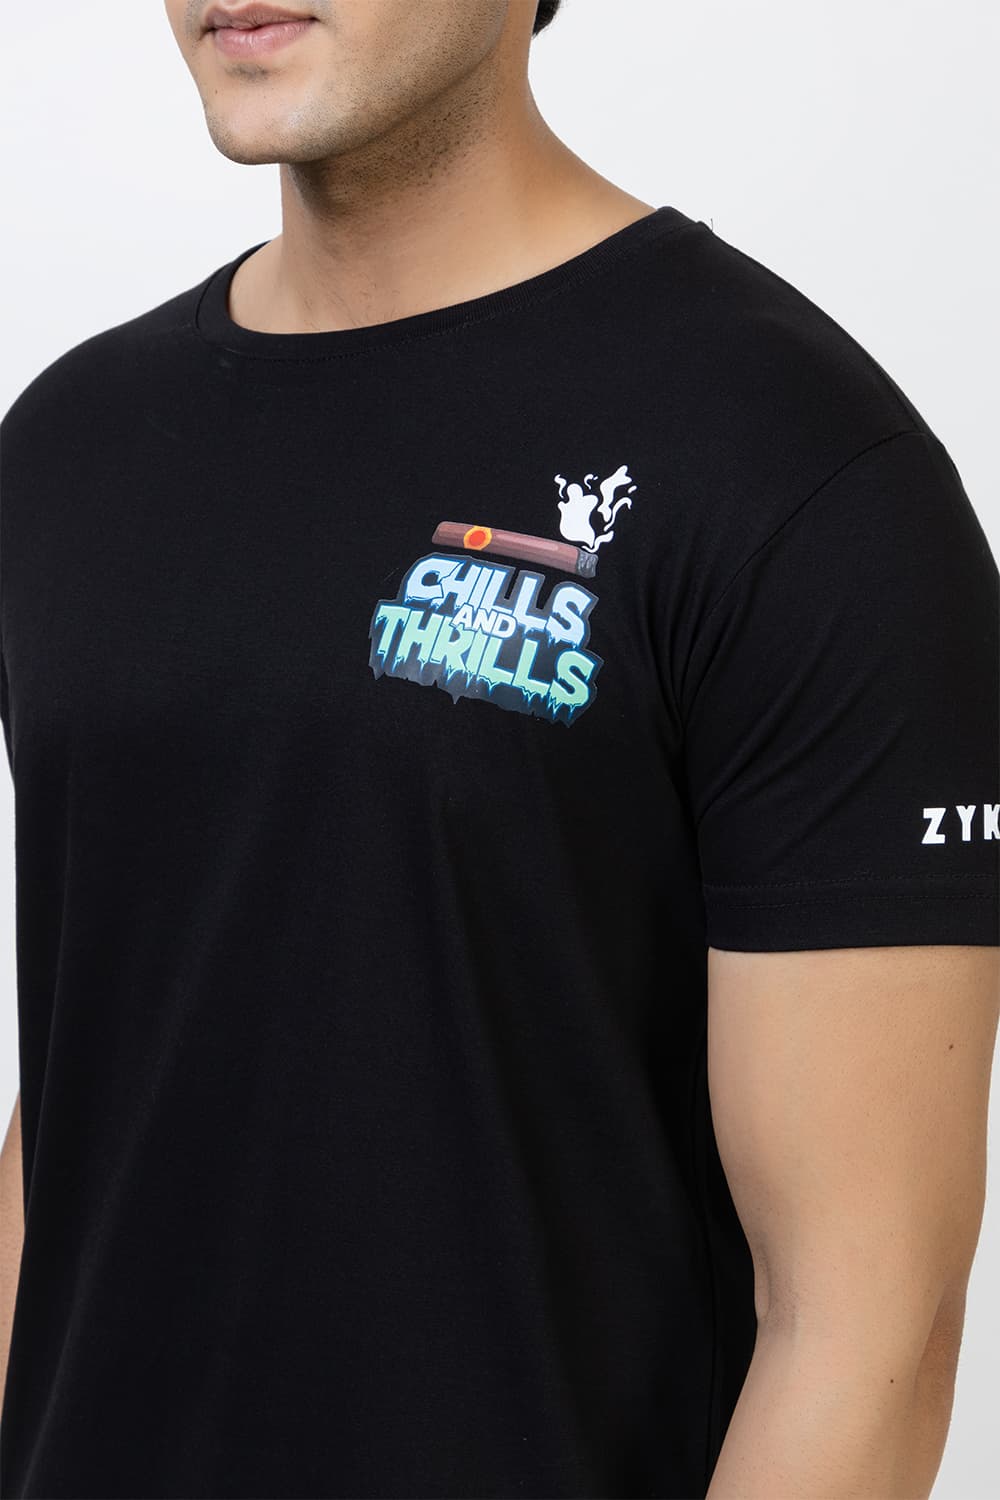 Chills And Thrills Regular Tee (T-Shirt)